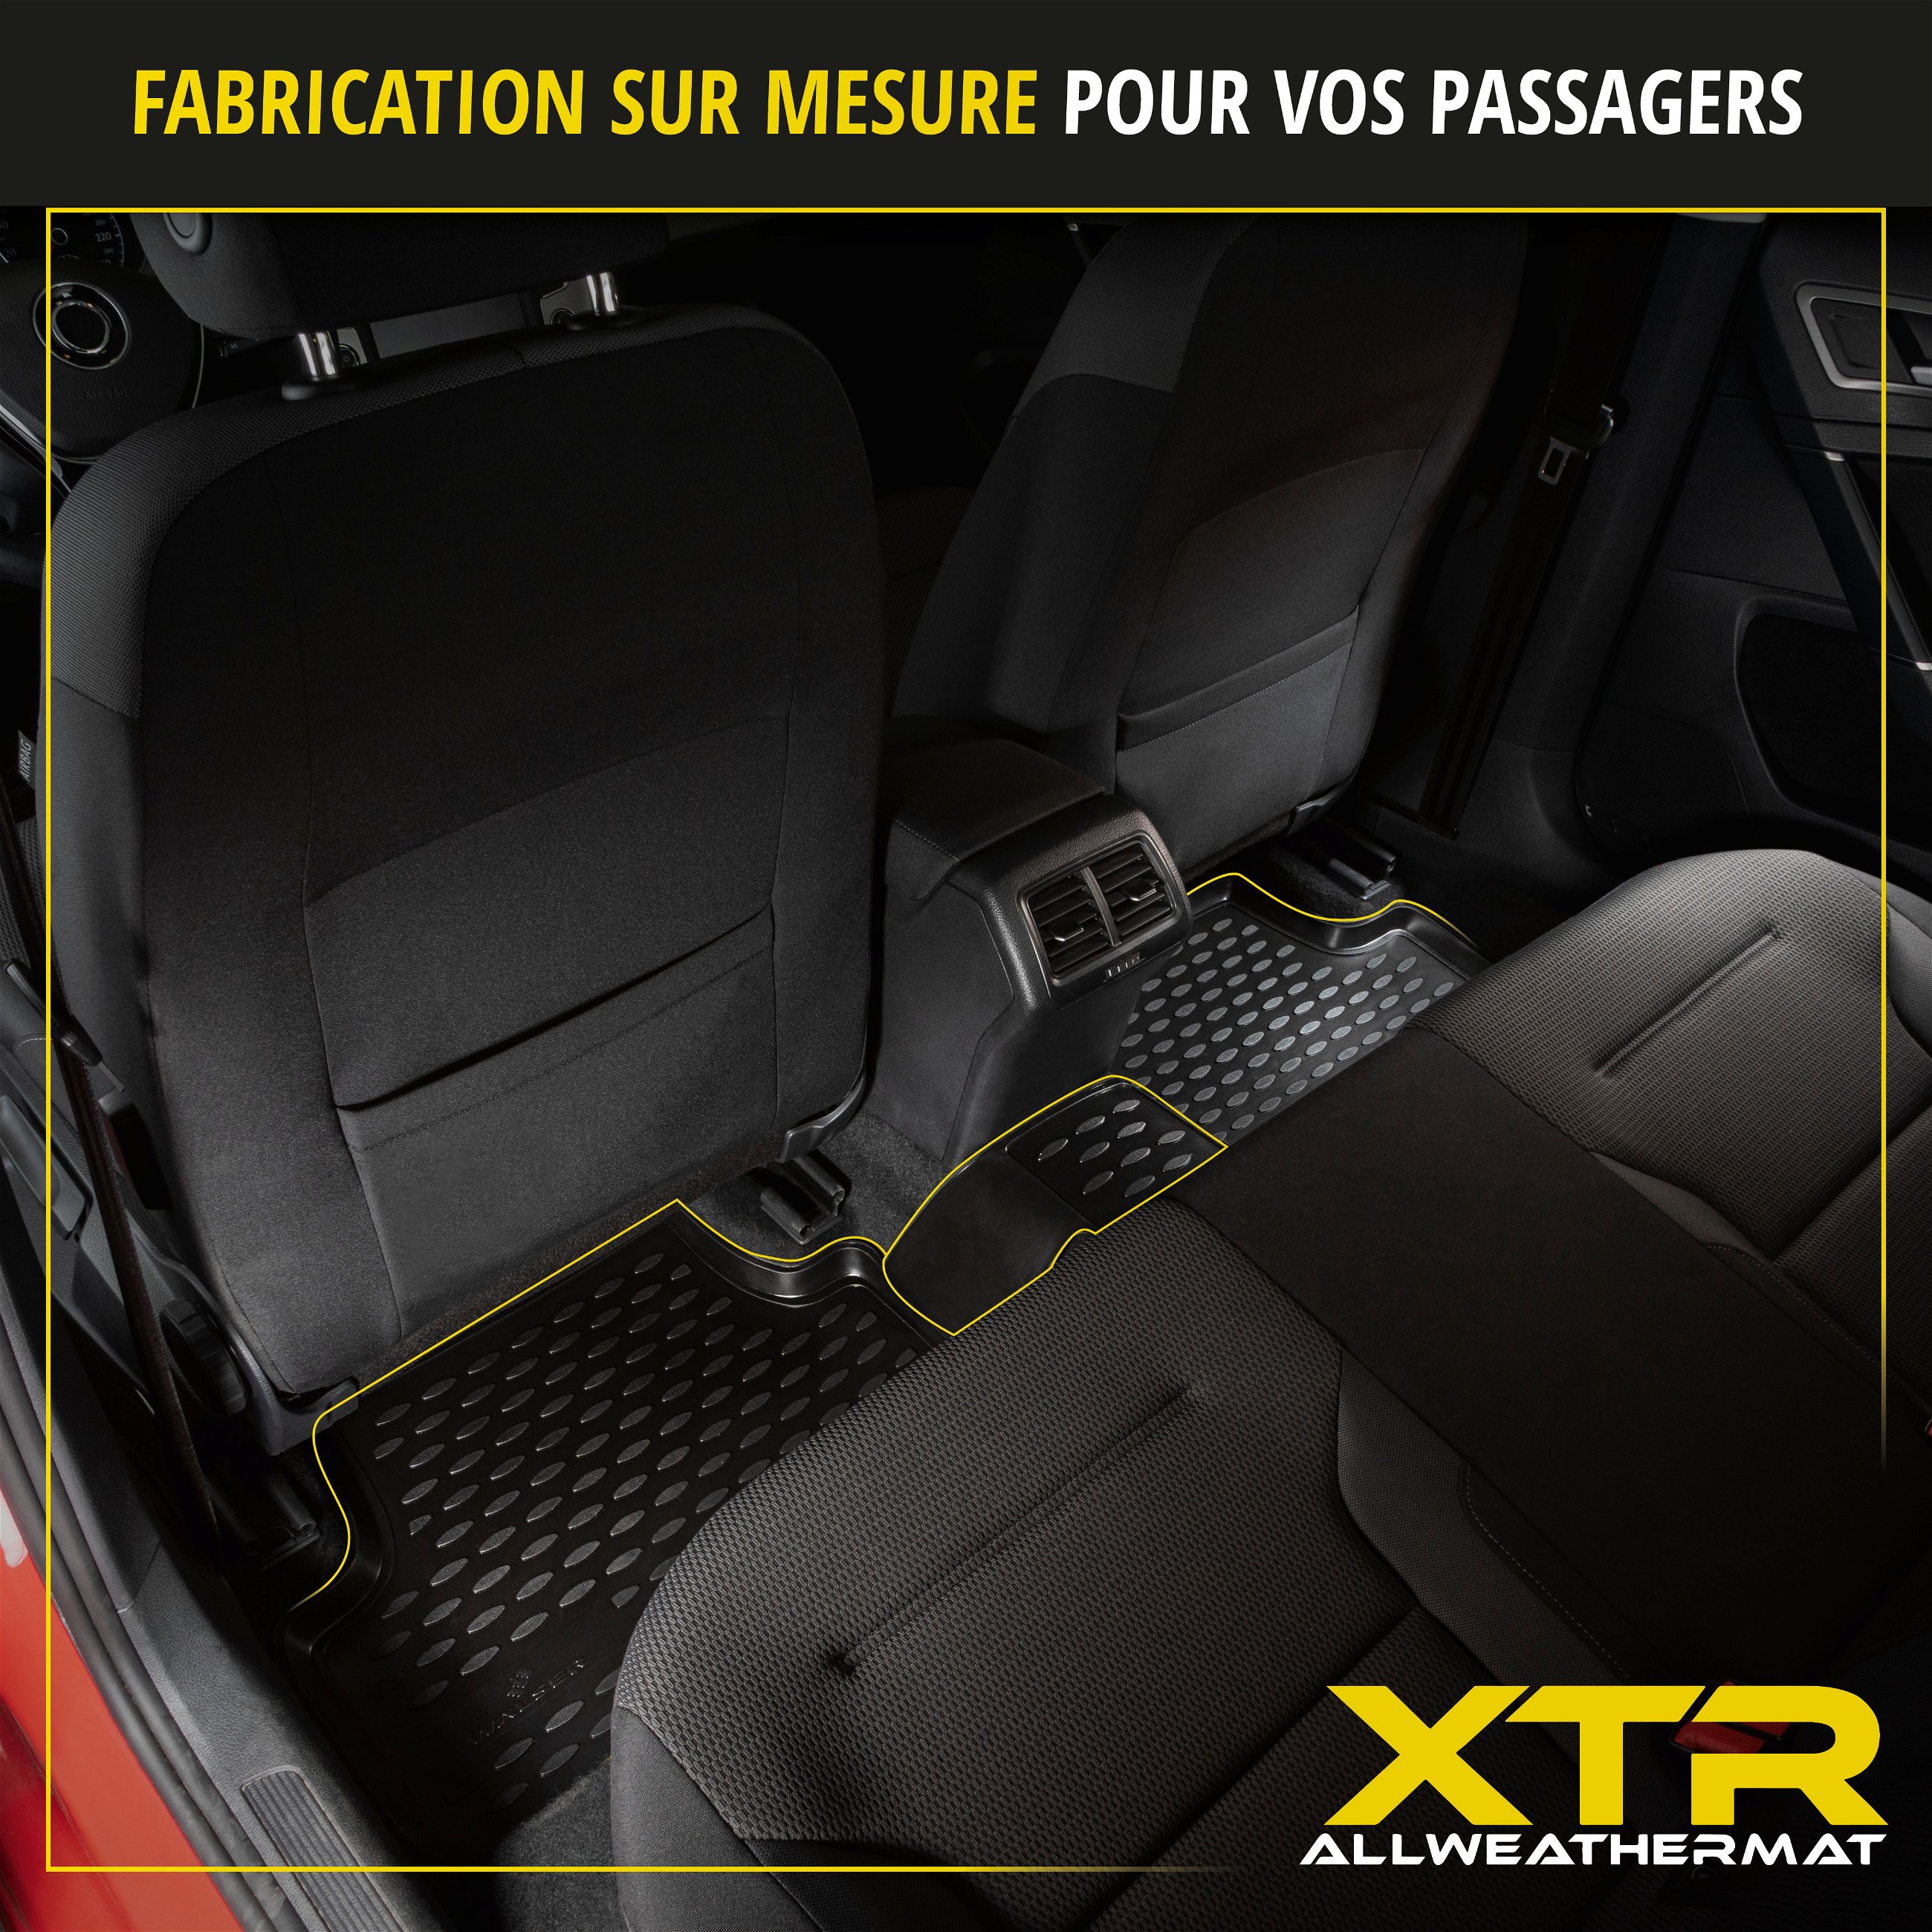 Tapis en caoutchouc XTR pour Opel Astra J 09/2009 - 10/2015, Astra J Caravan 10/2010 - 10/2015